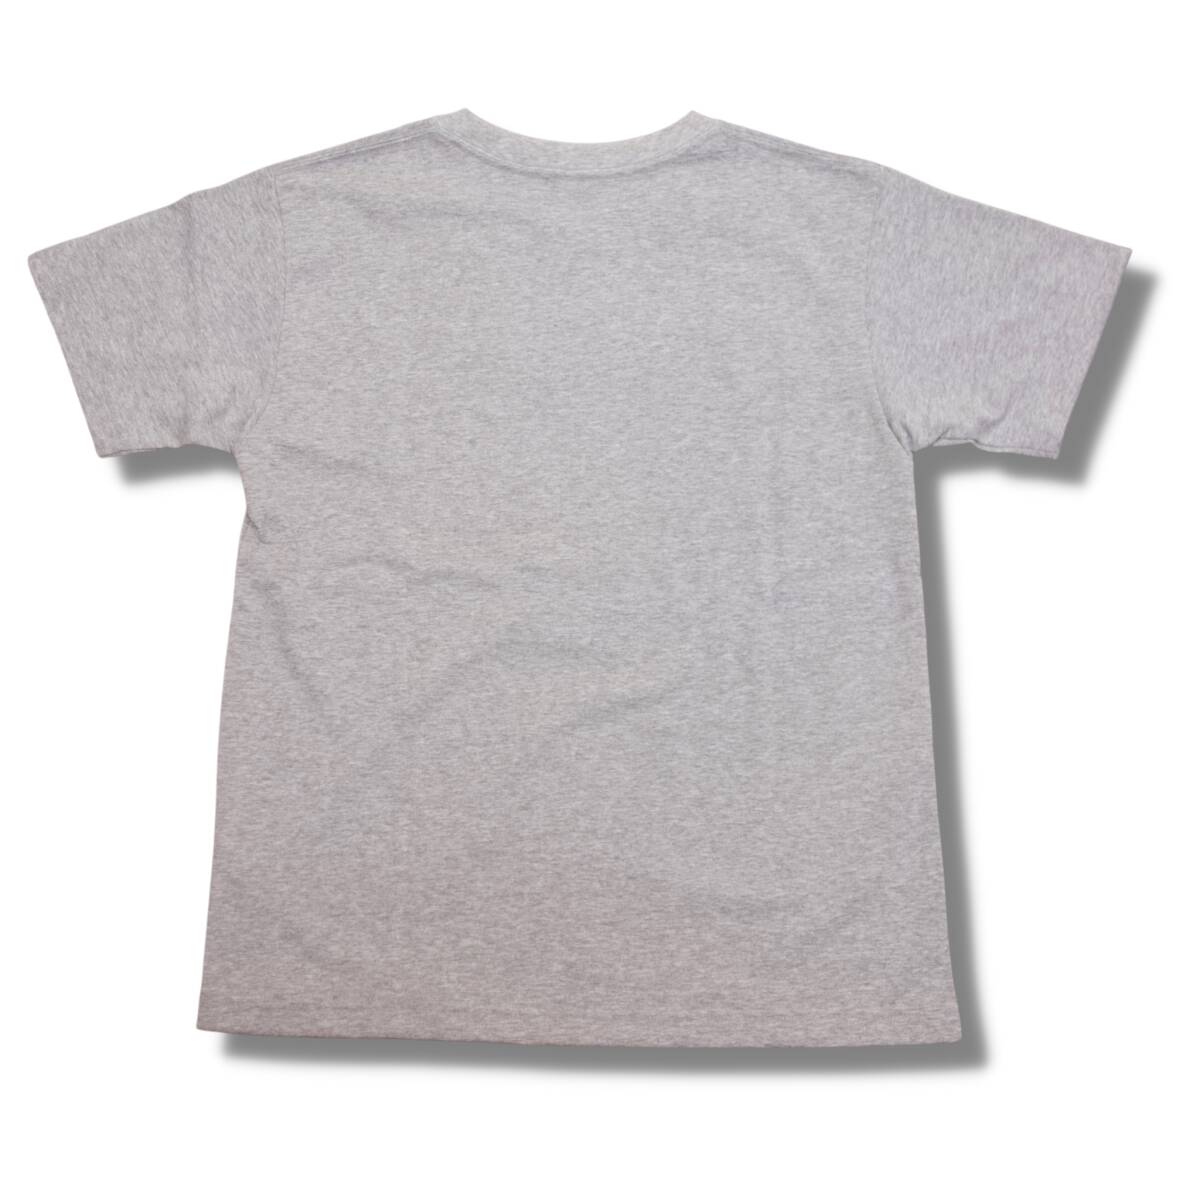 即決☆ノースフェイス カリフォルニア ロゴ Tシャツ GRY/XLサイズ ミックスグレー 灰色 半袖Tシャツ ロゴ 速乾 ドライ かわいい